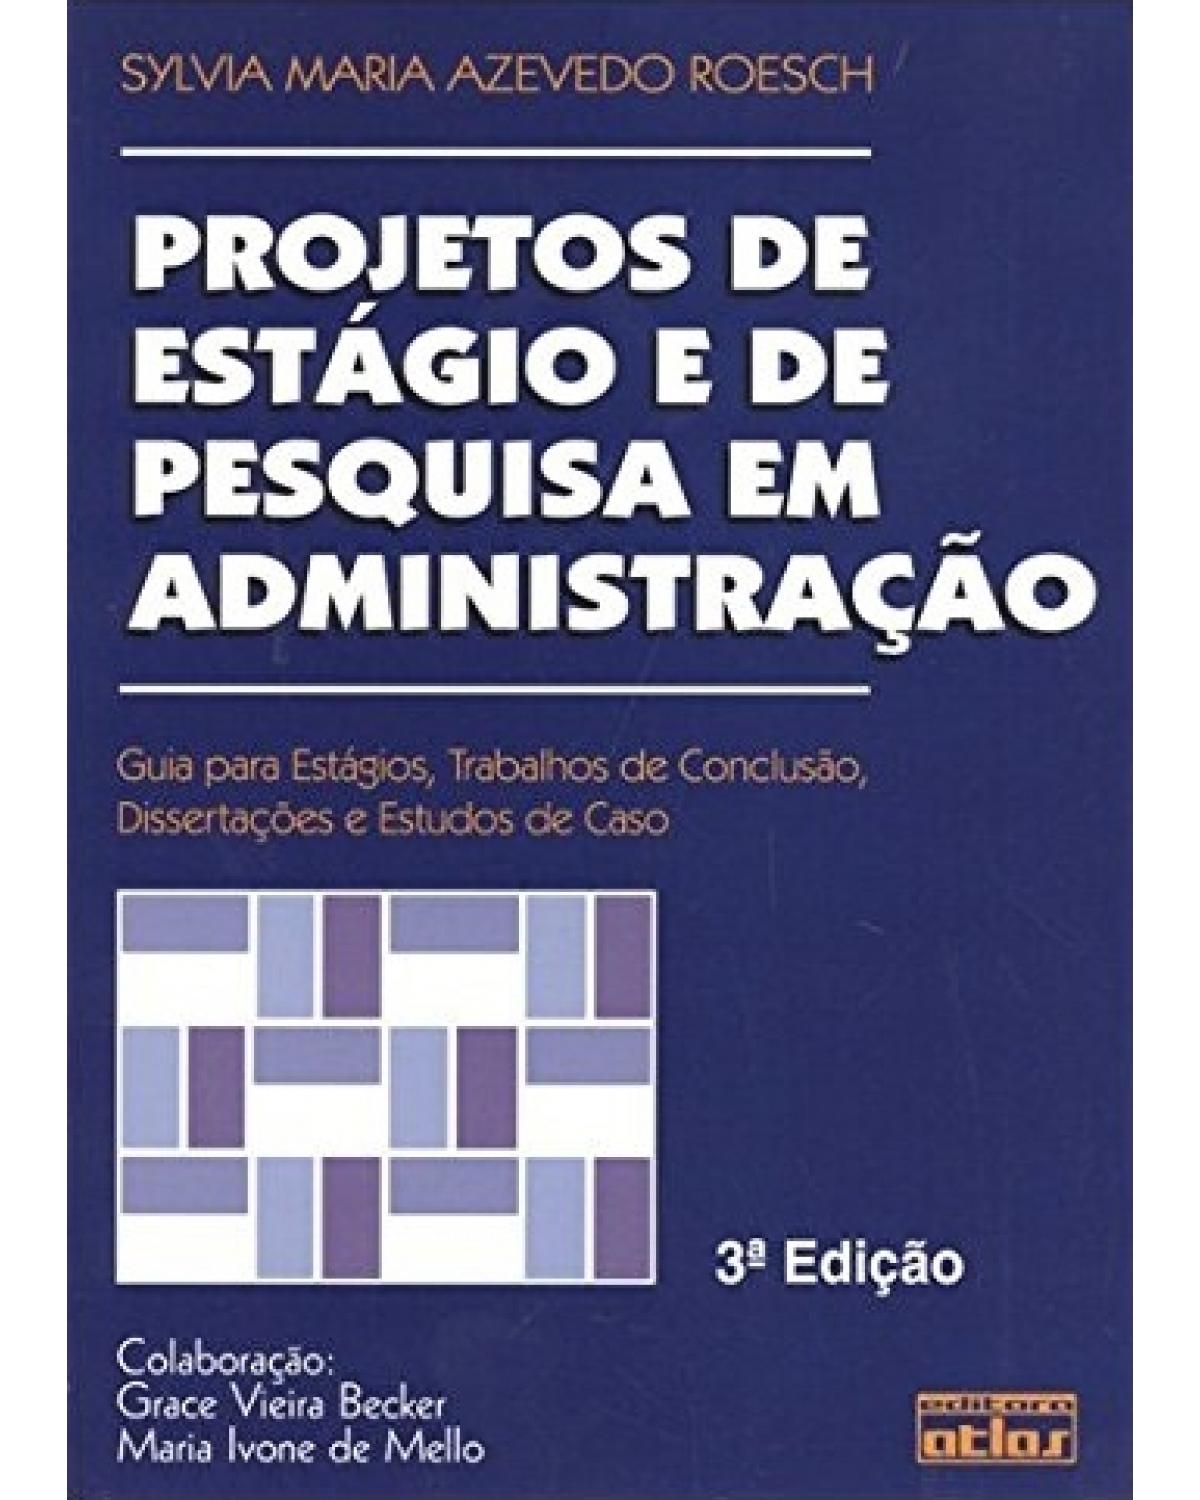 Projetos de estágio e de pesquisa em administração - Guia para estágios, trabalhos de conclusão, dissertações e estudos de caso - 3ª Edição | 2005